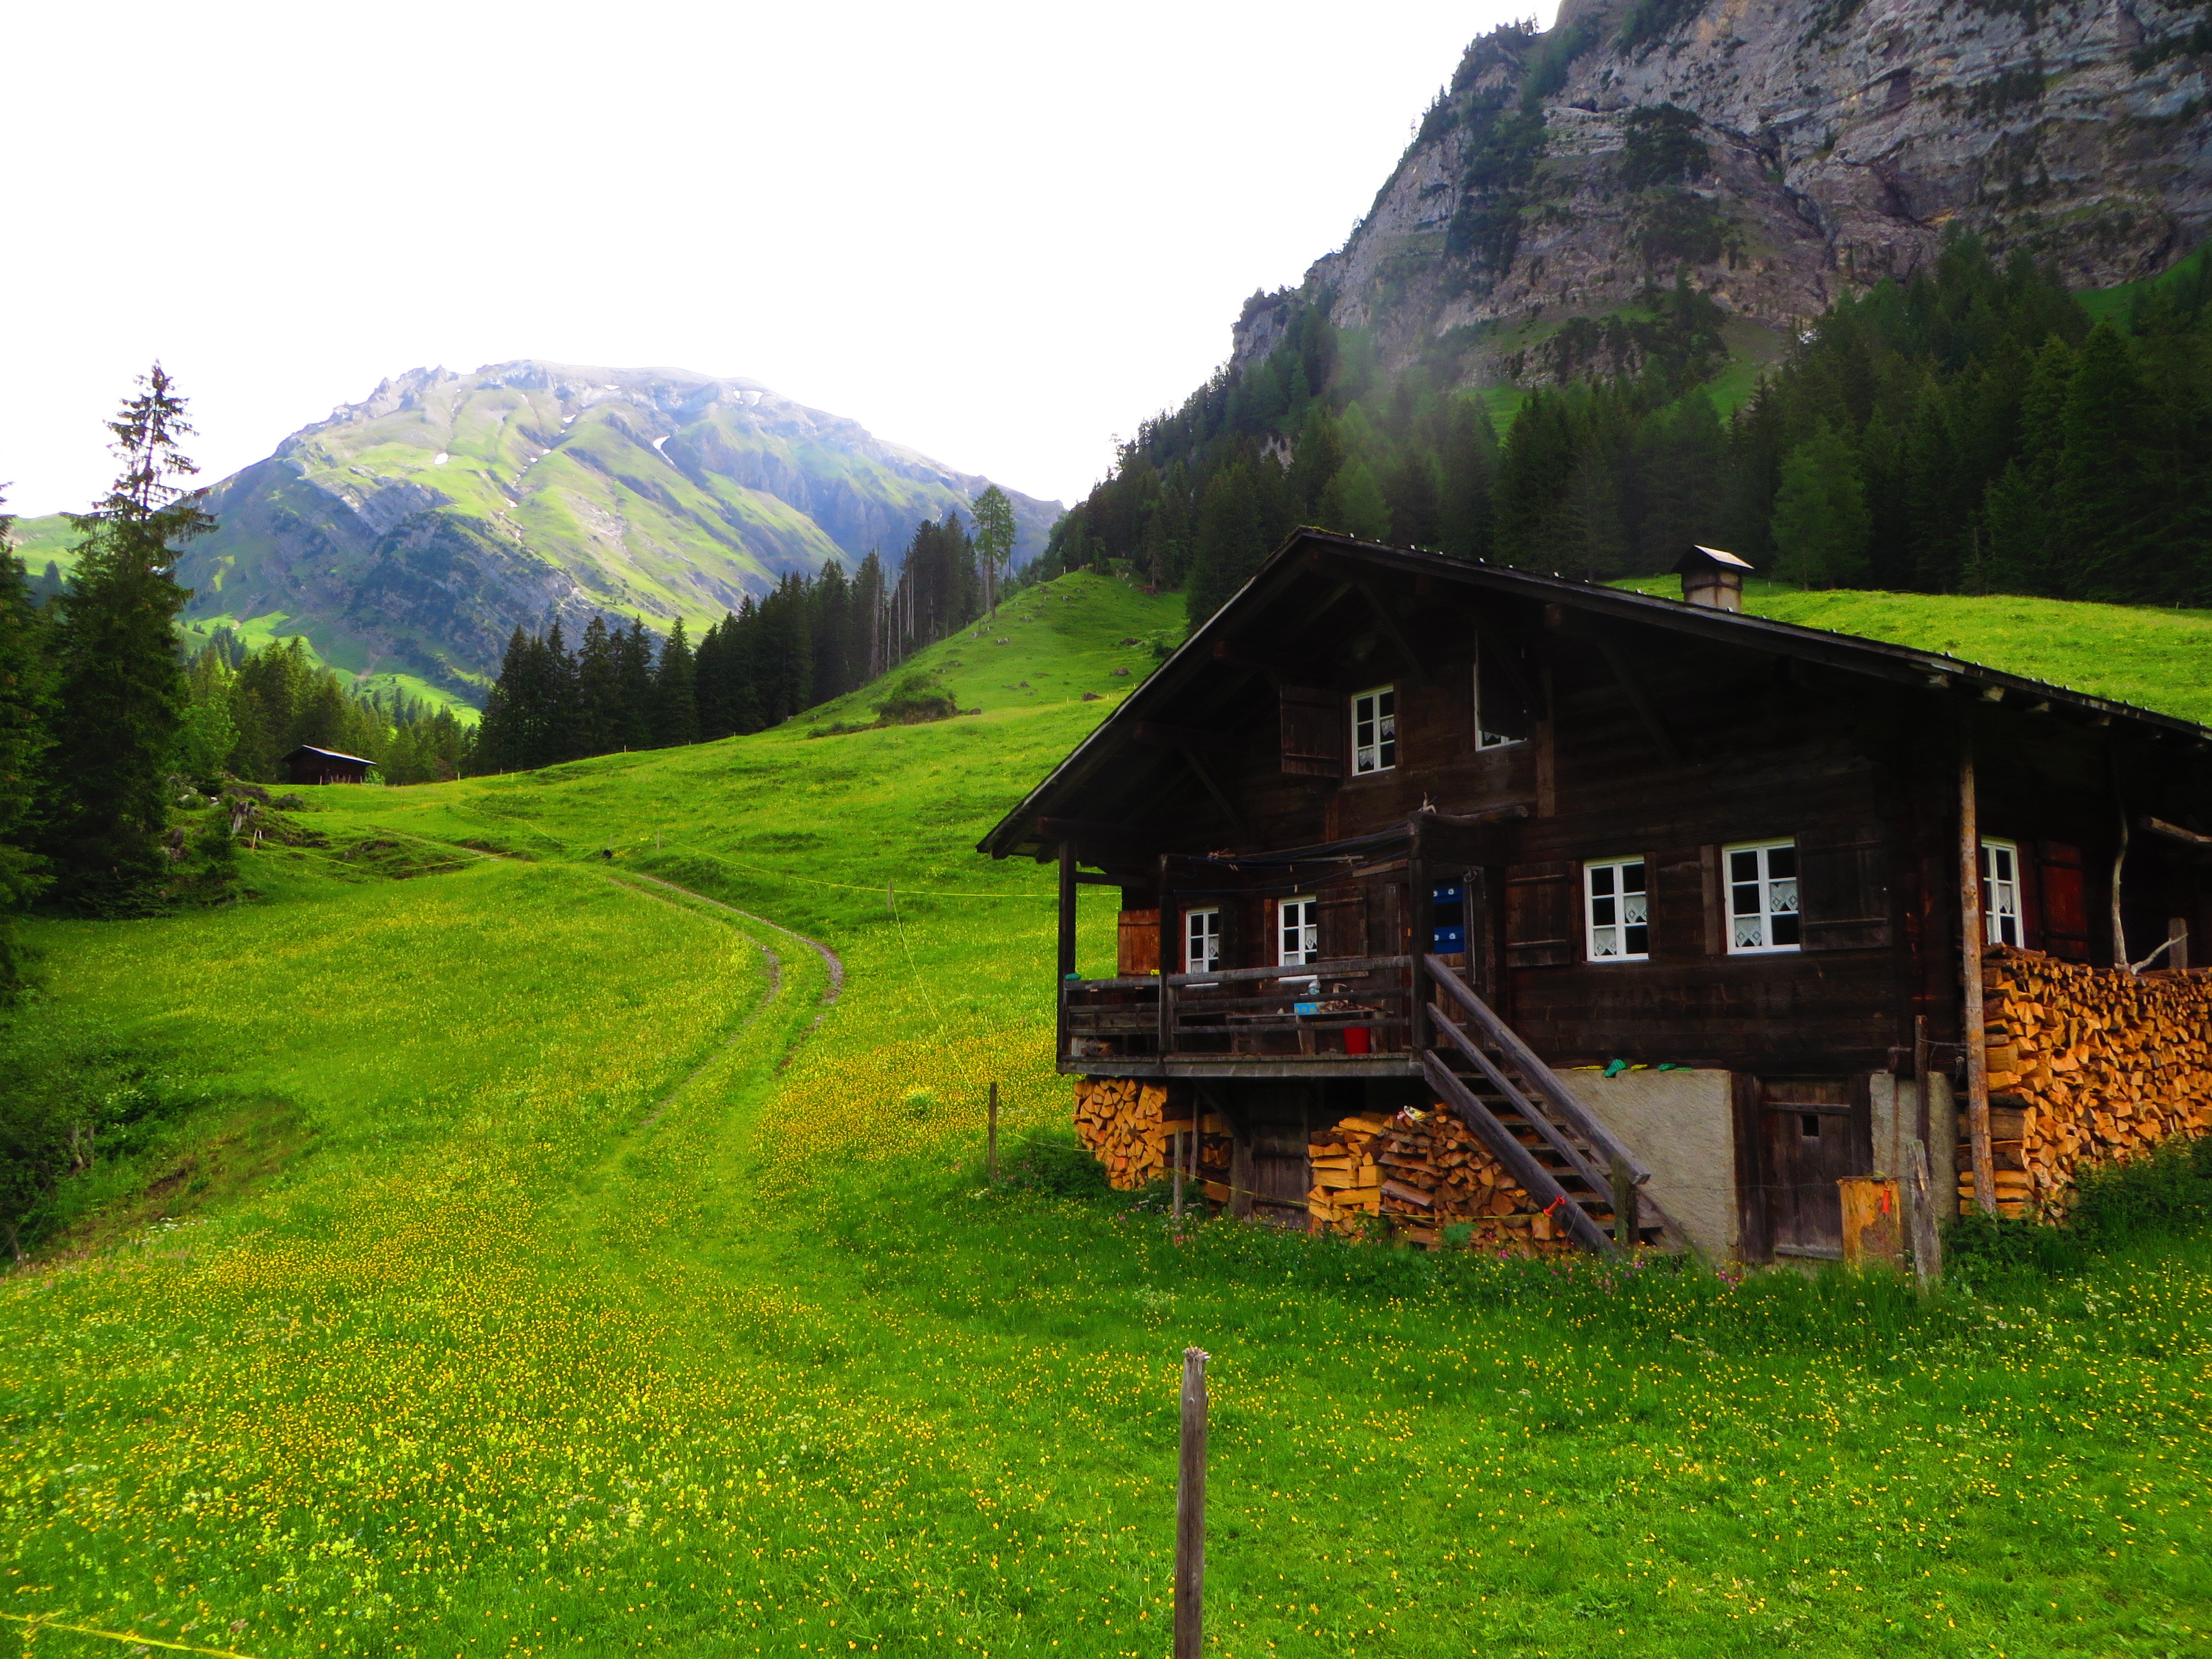 Switzerland, Lenk, Chalet, Green, Grass, Pine trees, Mountains, Alps, Swiss Alps, Bernese Alps Wallpaper